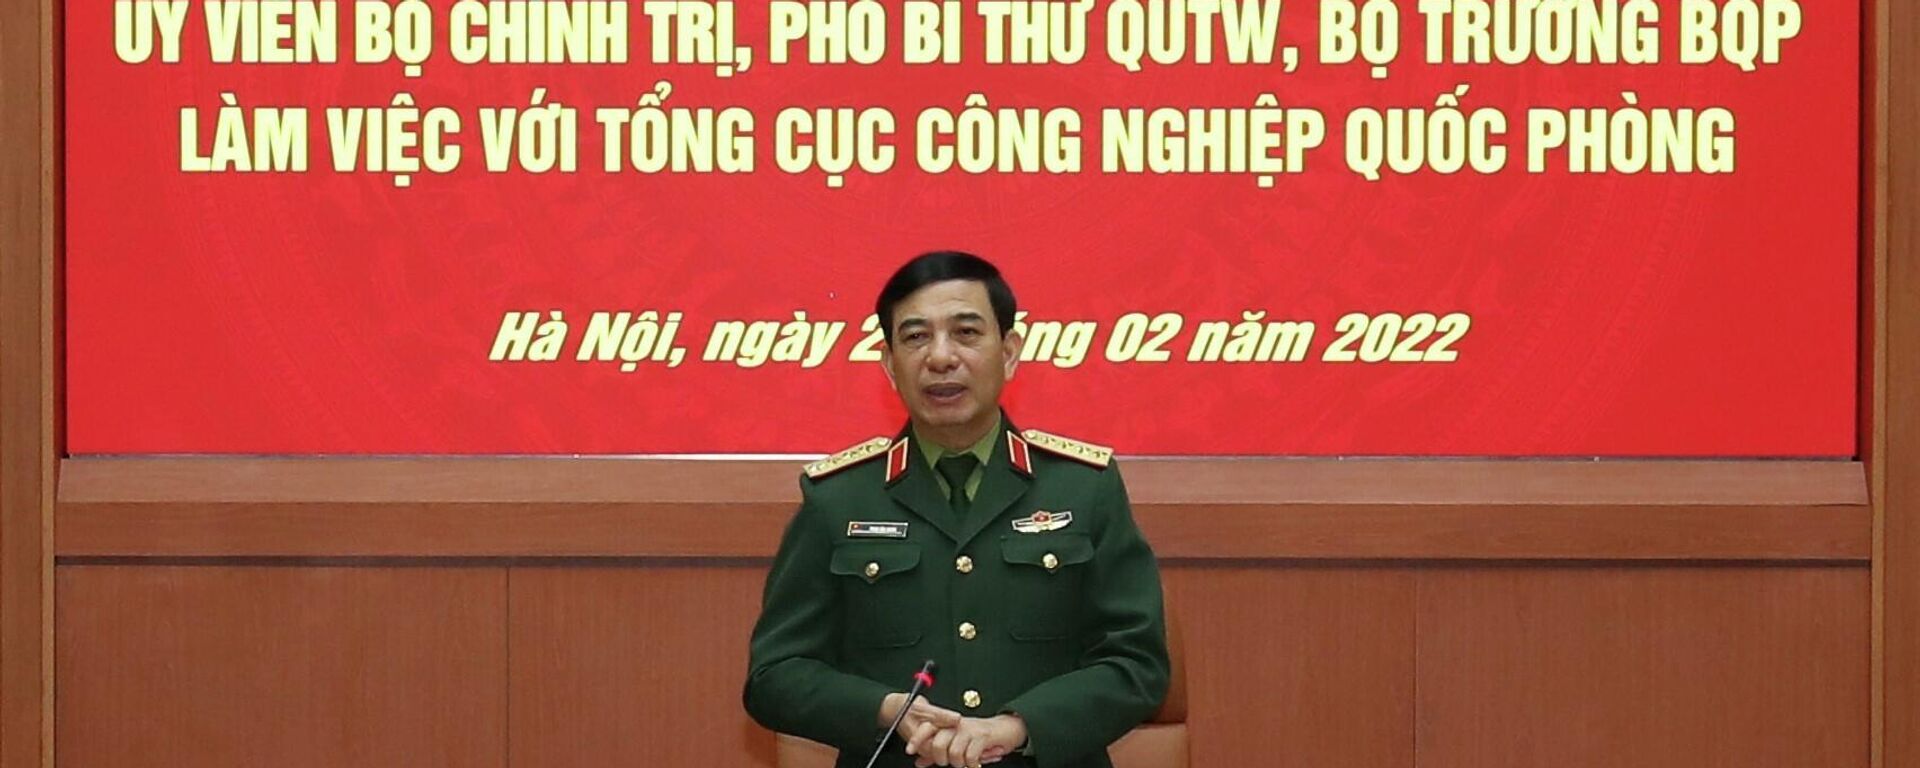 Đại tướng Phan Văn Giang phát biểu tại buổi làm việc - Sputnik Việt Nam, 1920, 21.02.2022